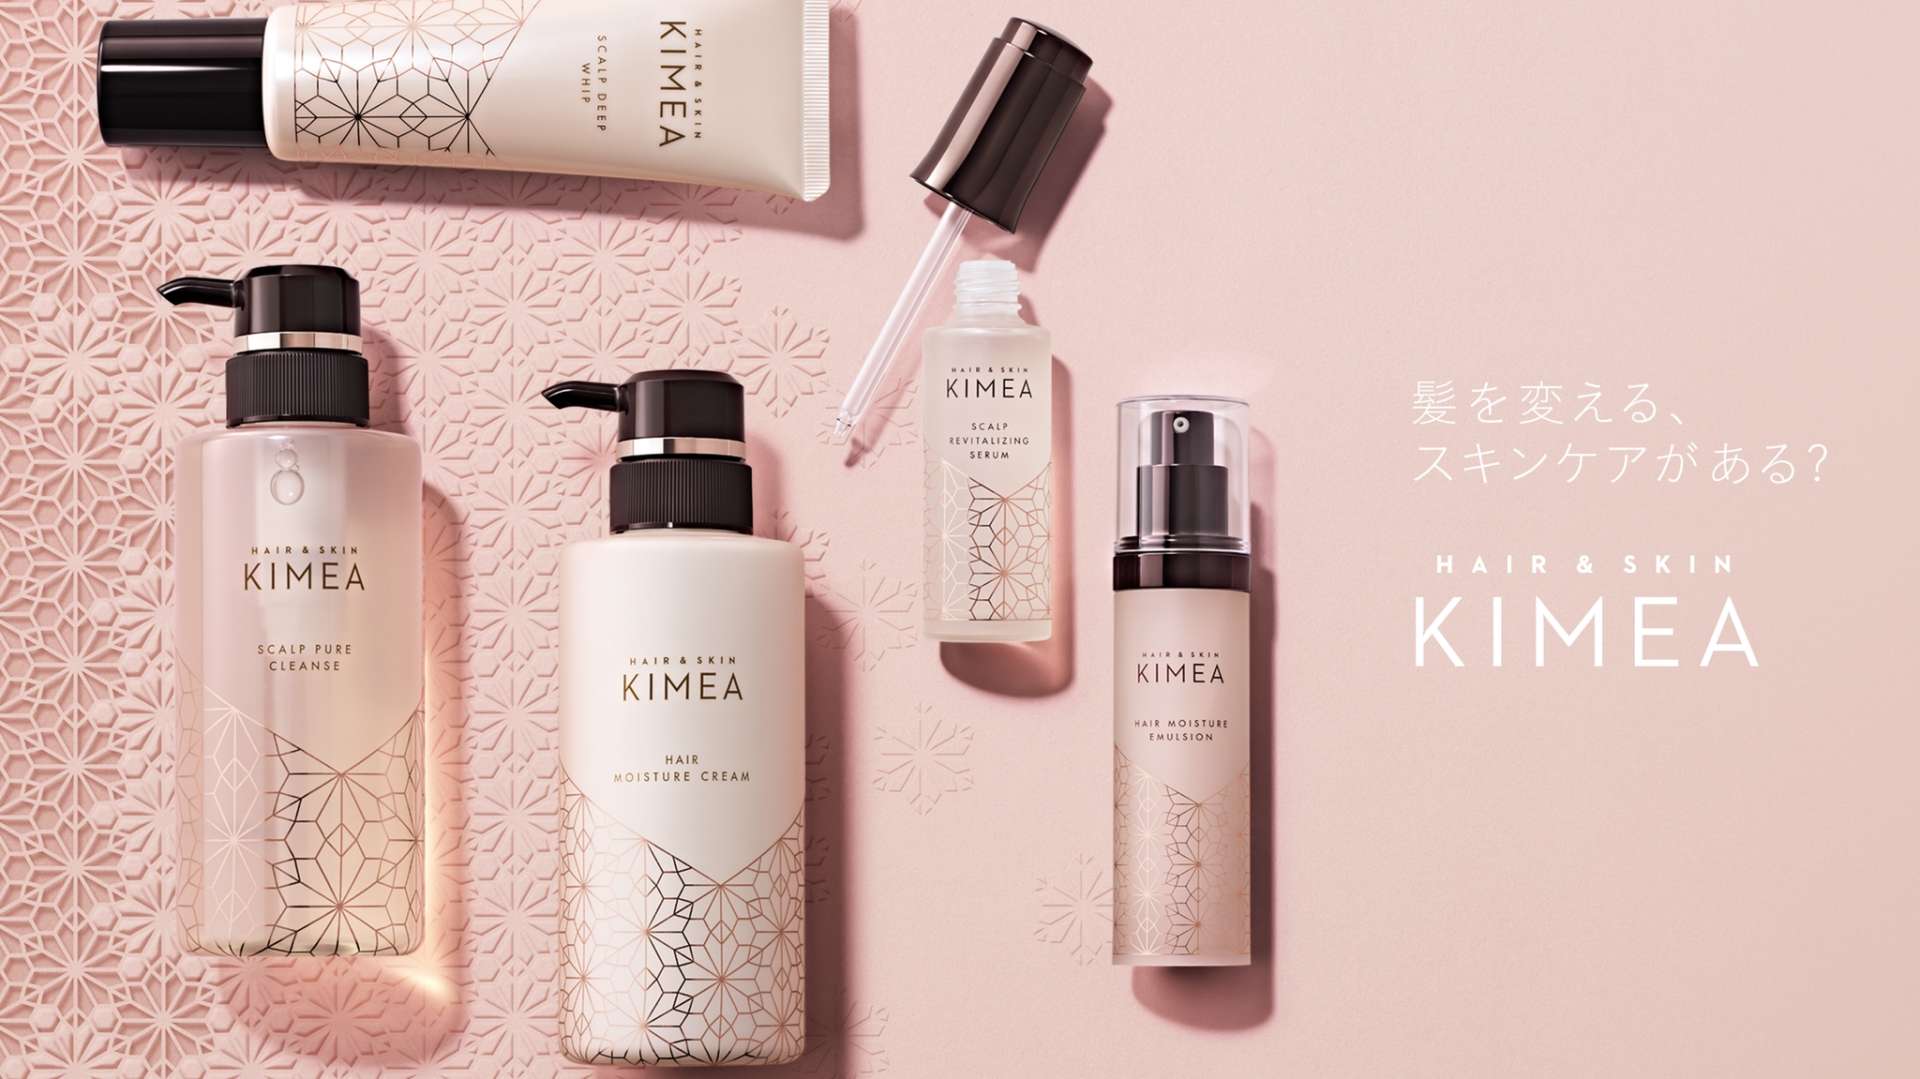 2019年日本KIMEA头皮养护系列广告像护肤一样护理头发篇